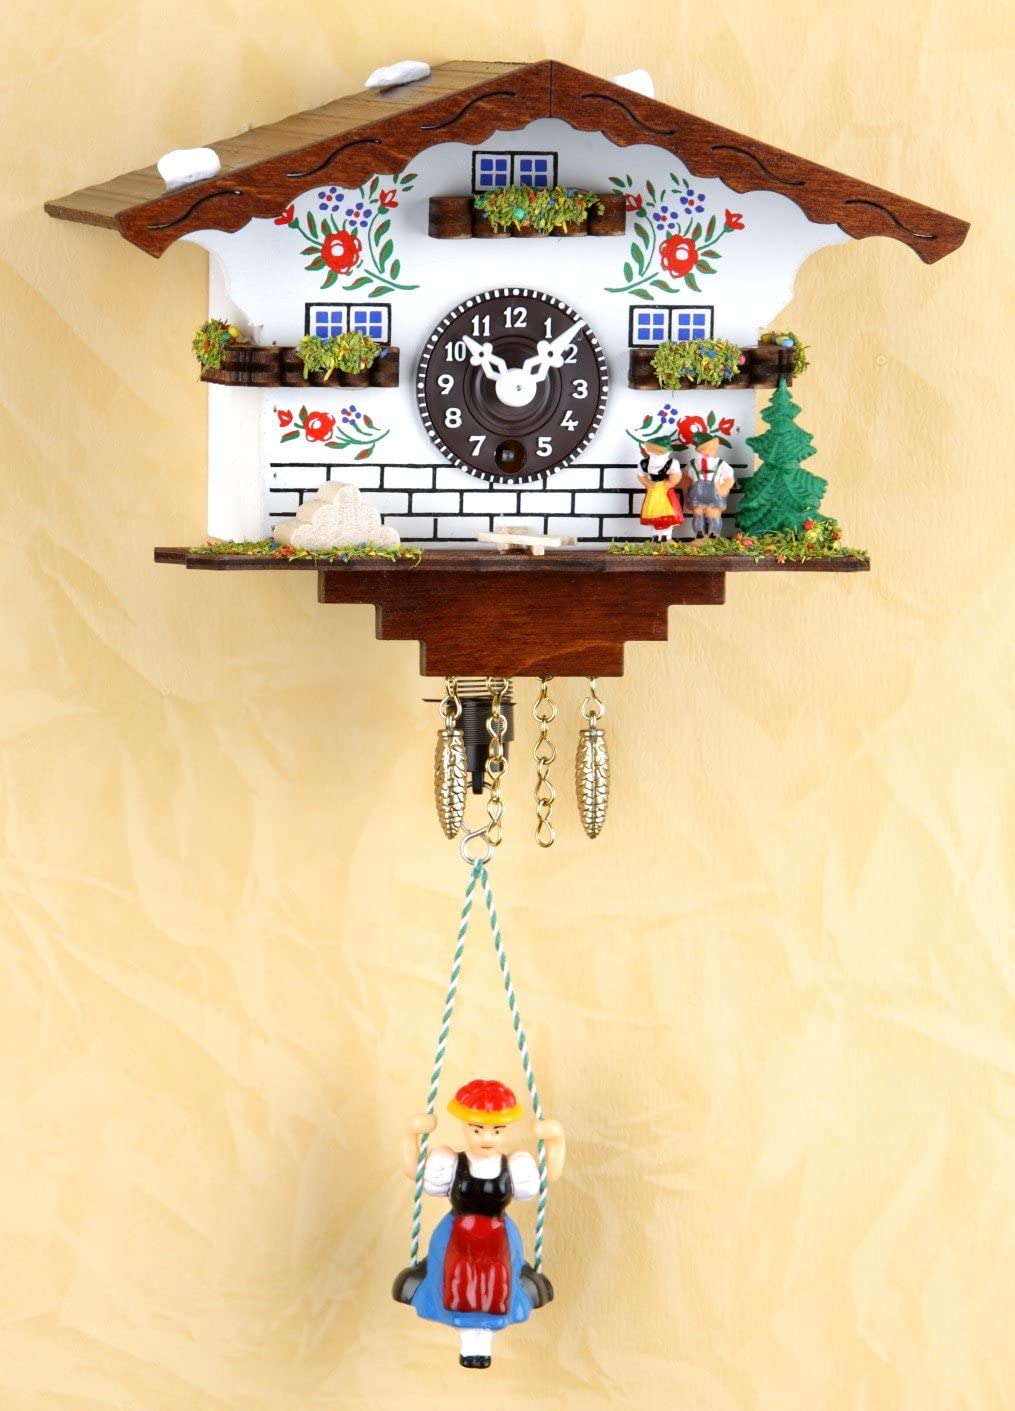 Original Schwarzwald- Miniatur Schaukeluhr mit Puppe - 1 Tag- Federzugwerk-Germany Black Forest- Trenkle Uhr